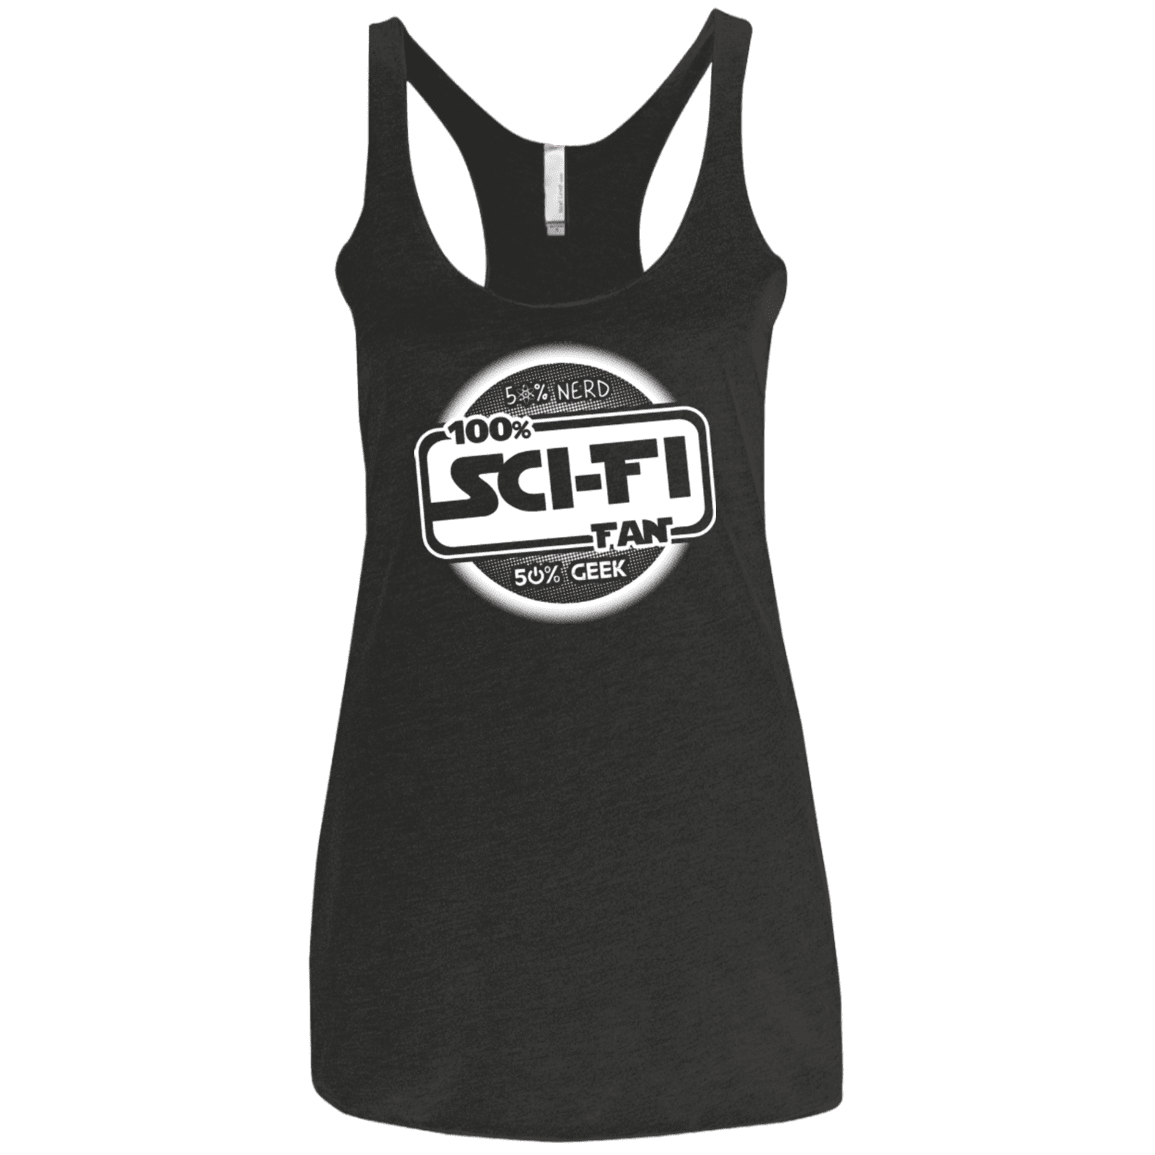 T-Shirts Vintage Black / X-Small 100 Percent Sci-fi Women's Triblend Racerback Tank